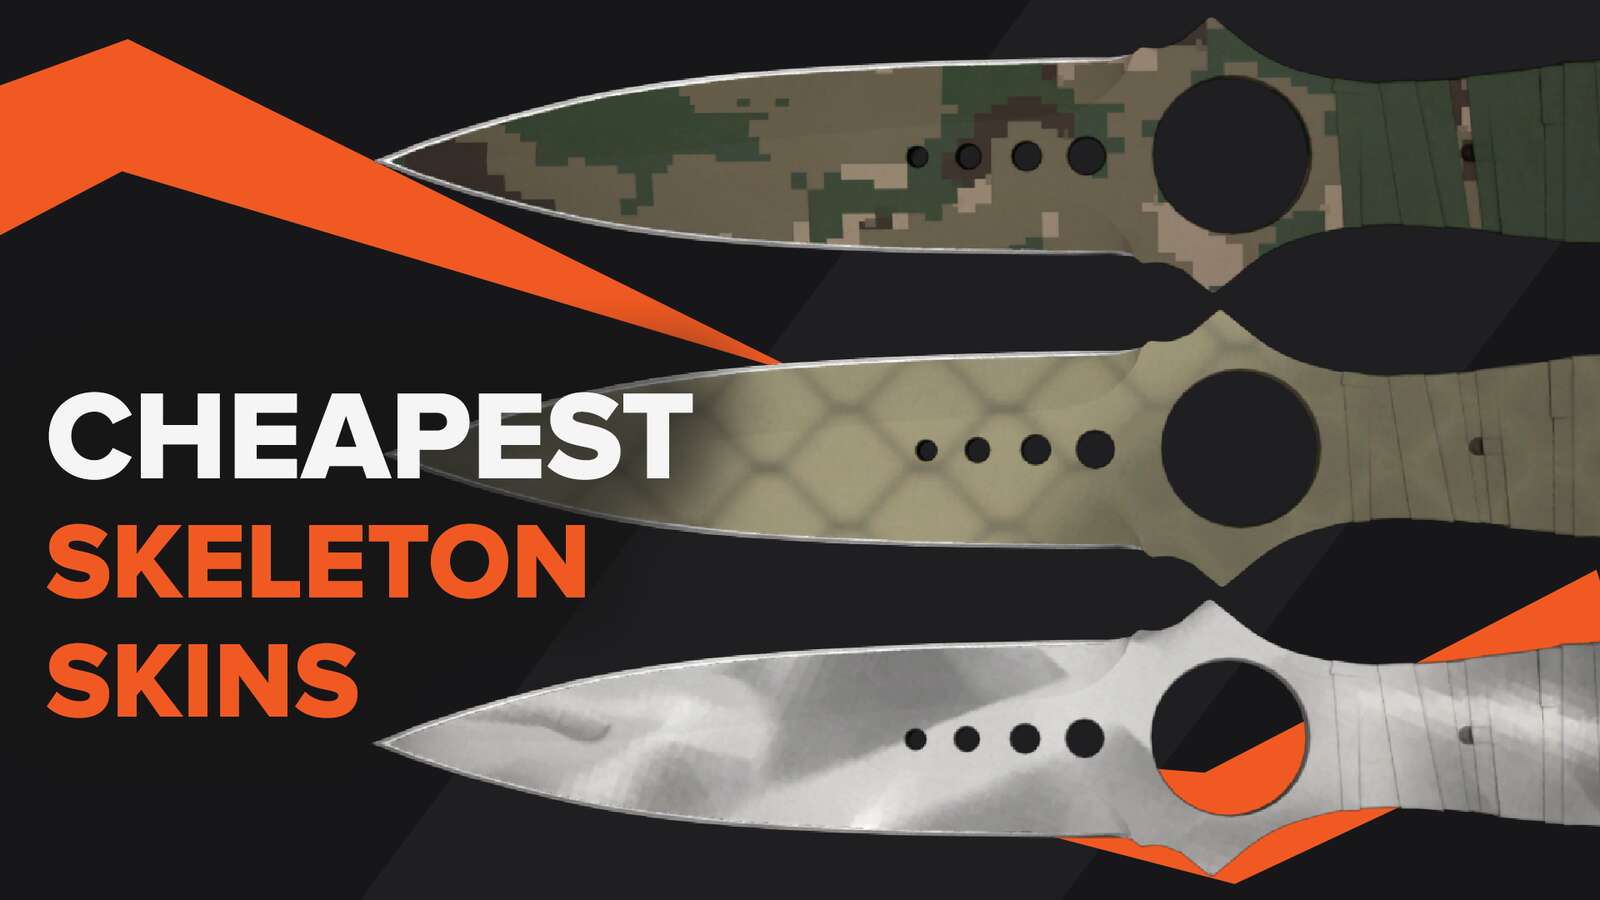 The Cheapest Skeleton Knife Skins in CSGO